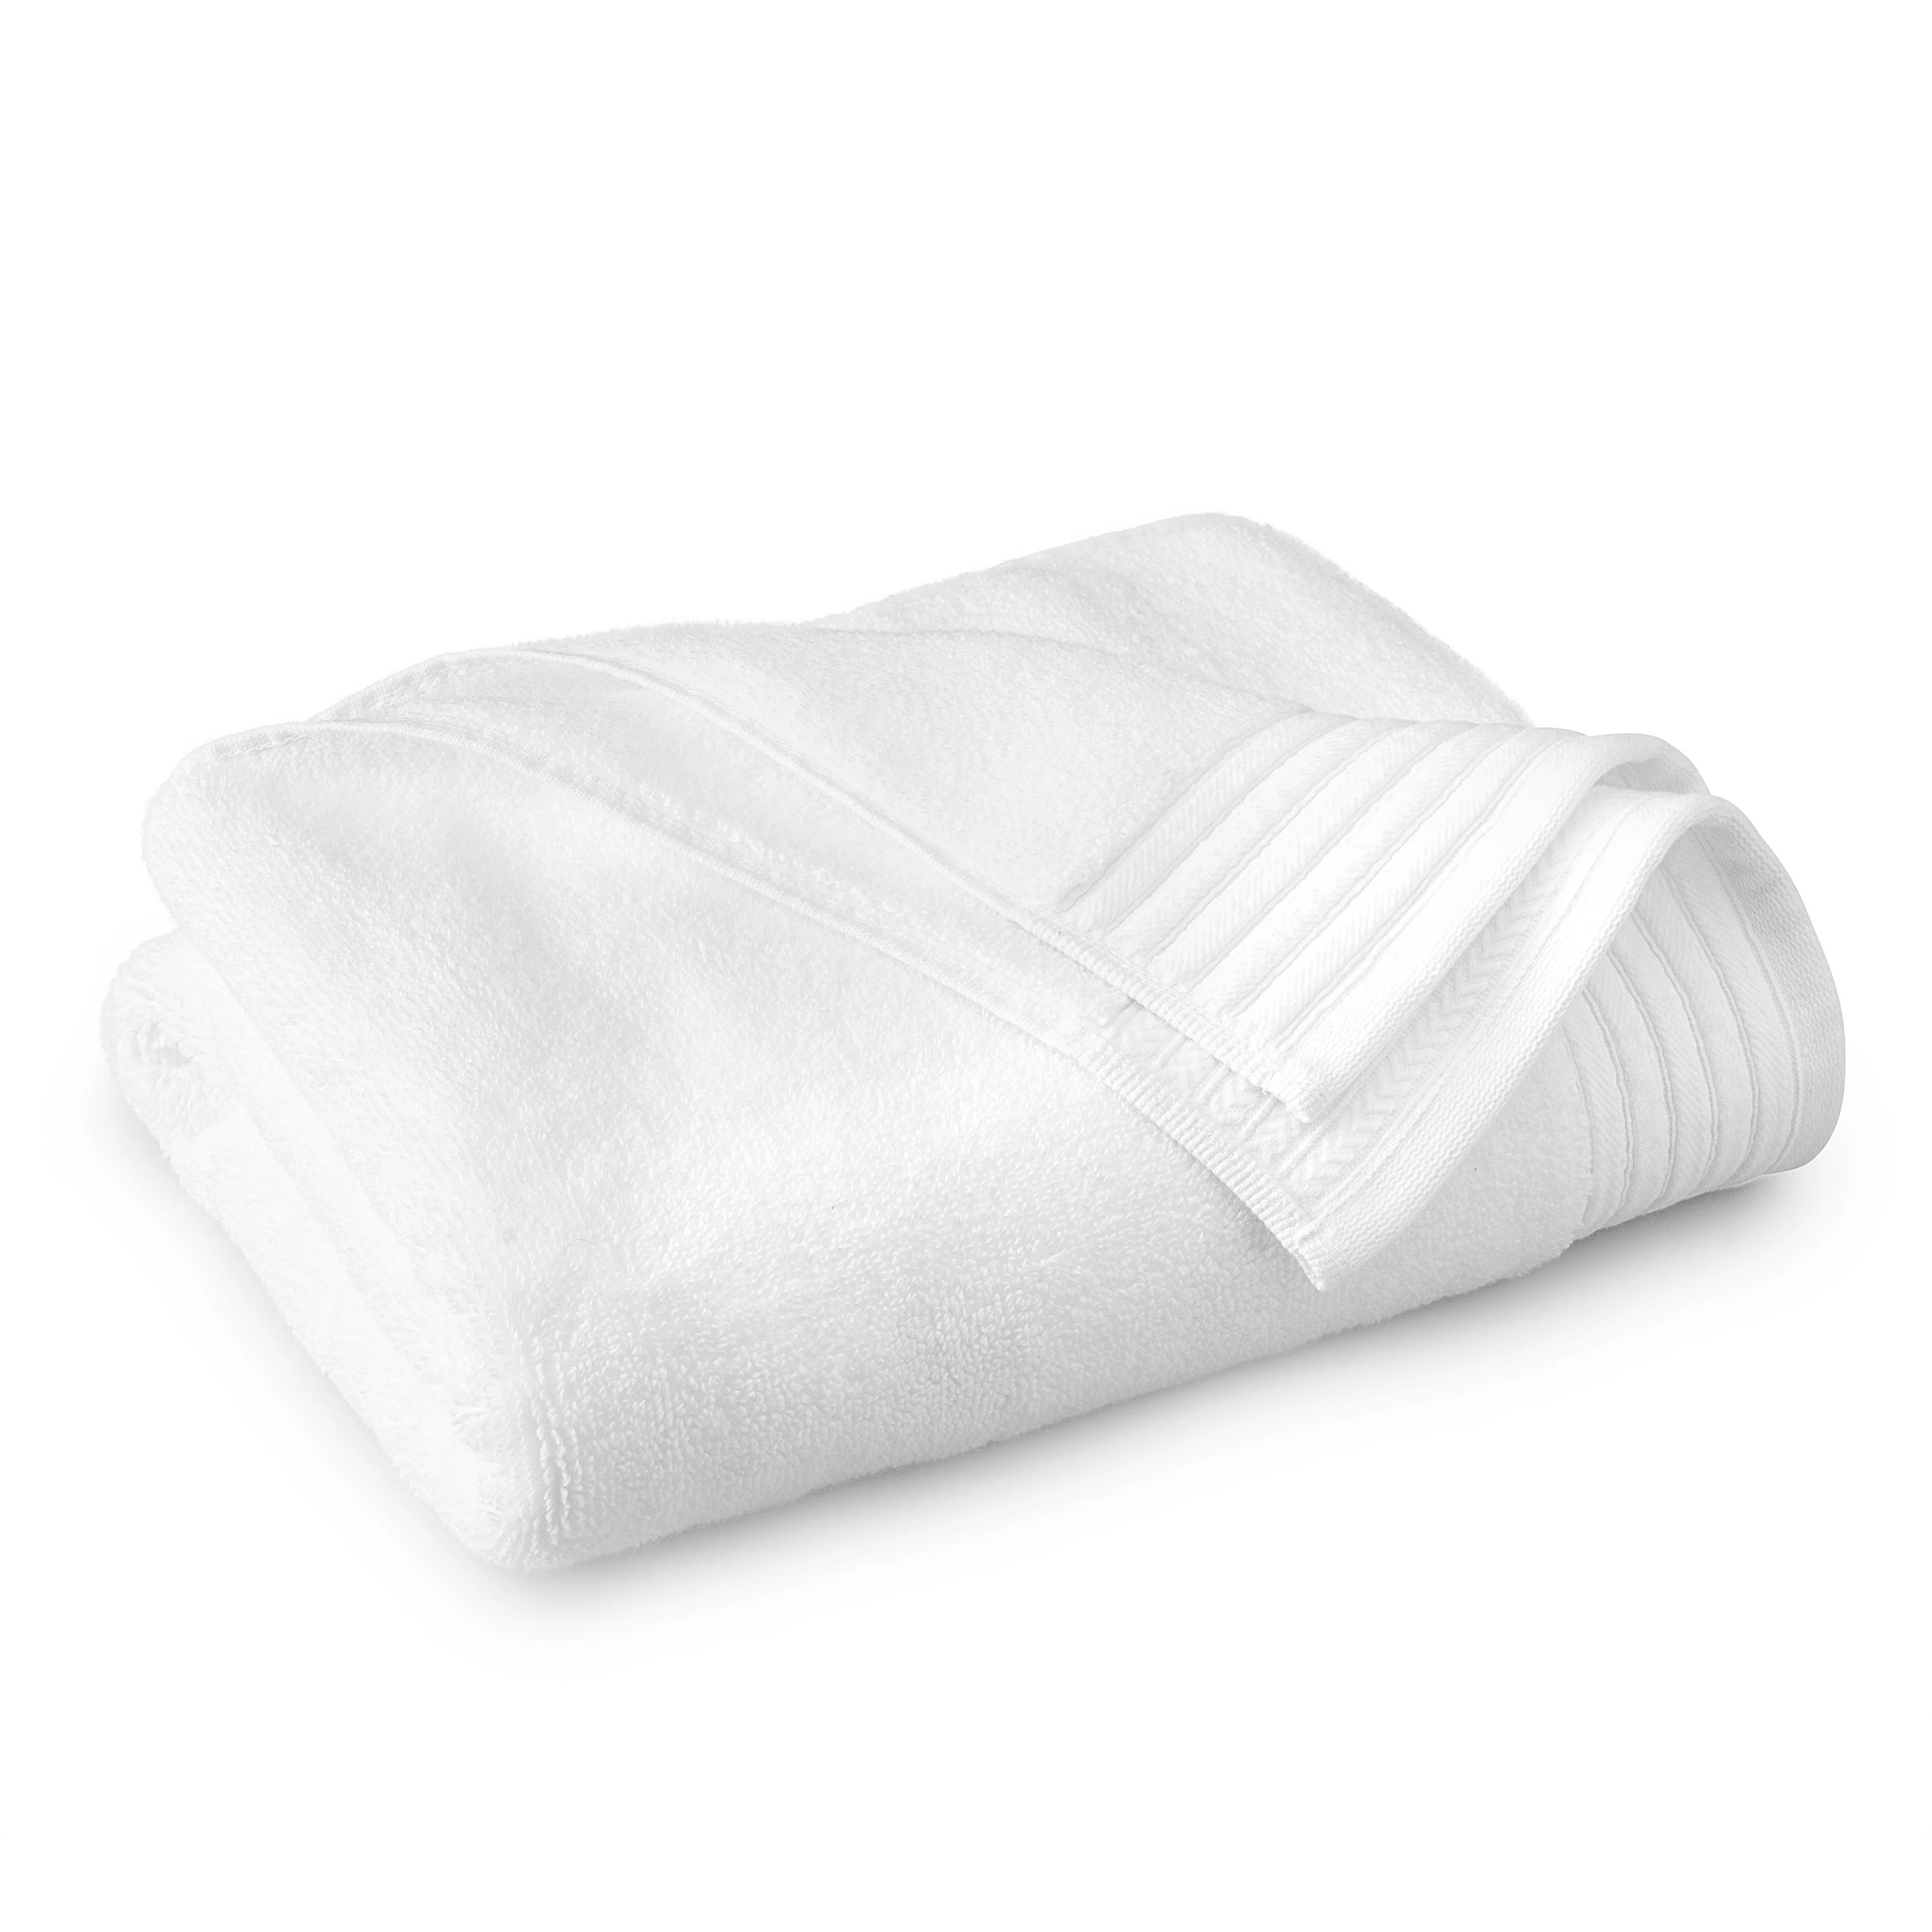 Egyptian/Towel